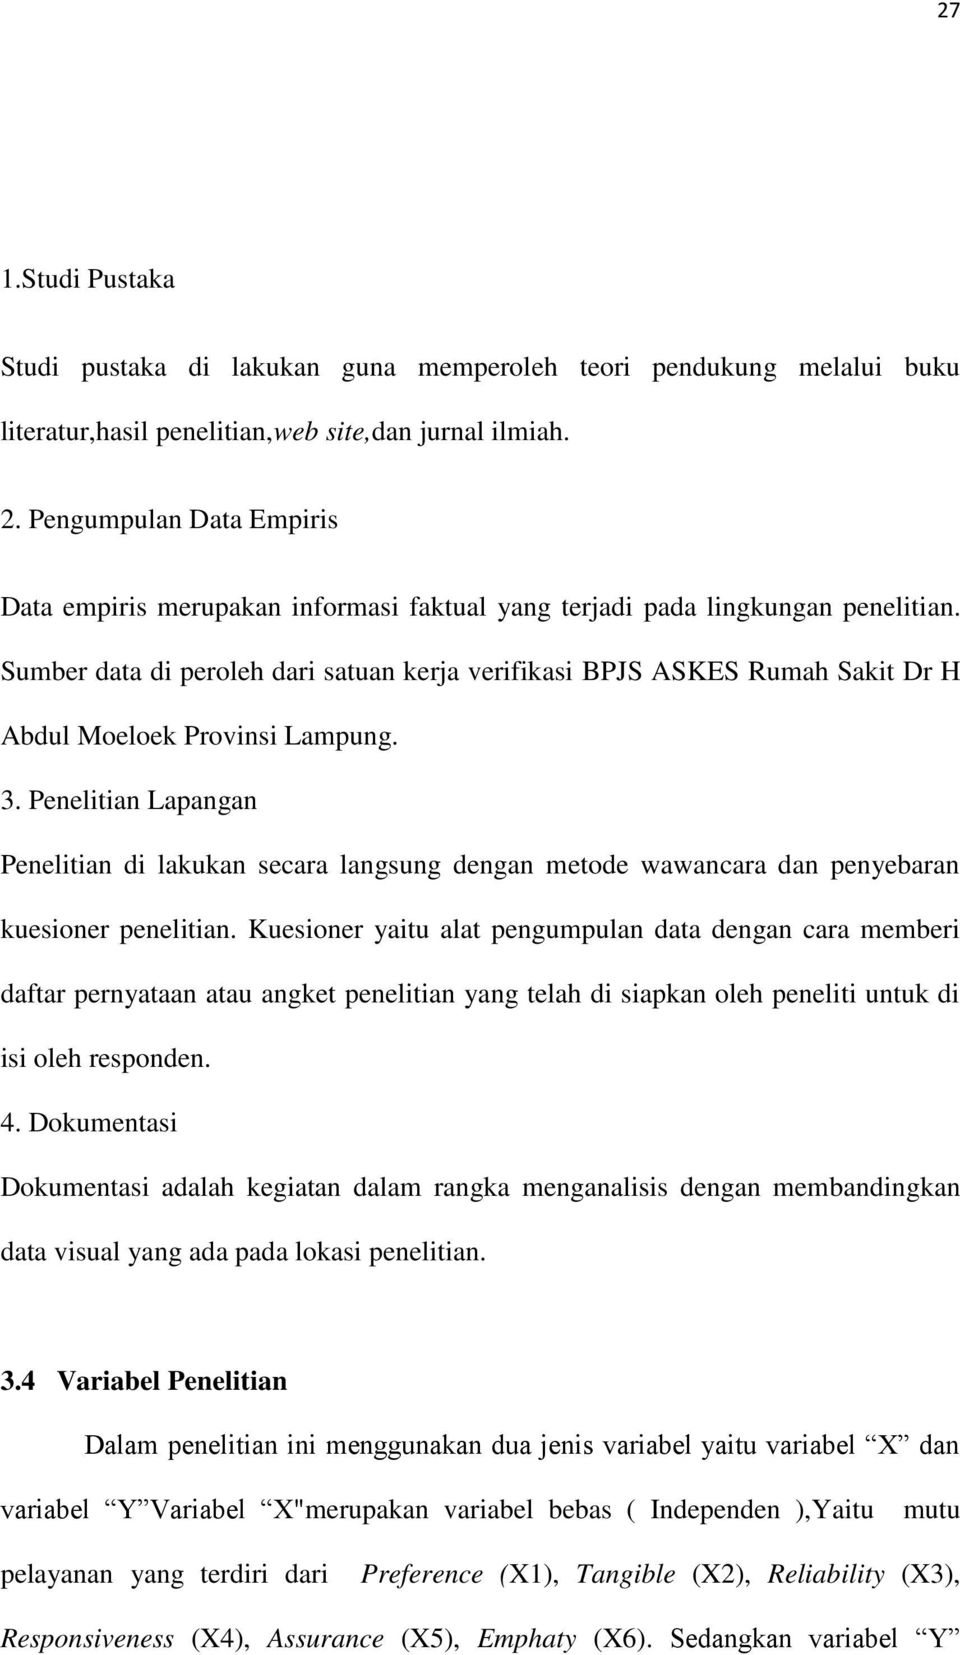 Sumber data di peroleh dari satuan kerja verifikasi BPJS ASKES Rumah Sakit Dr H Abdul Moeloek Provinsi Lampung. 3.